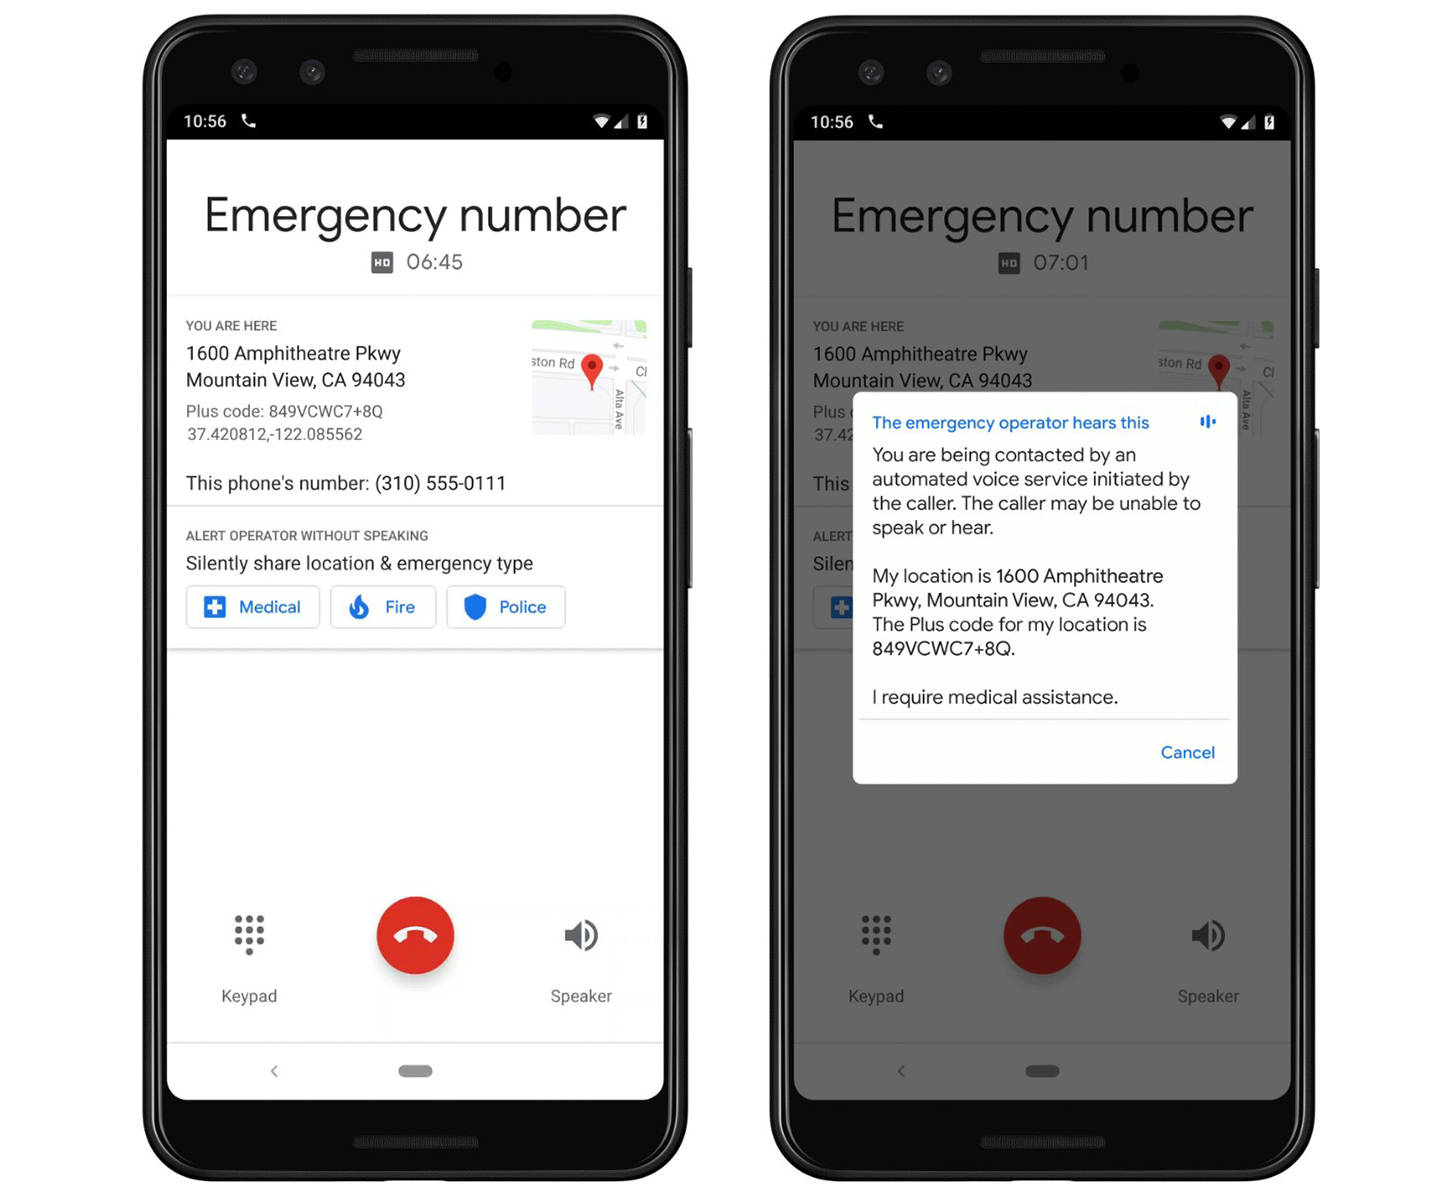 جوجل لإطلاق خدمة الصوت الآلي لمكالمات الطوارئ على هواتف أندرويد مختارة